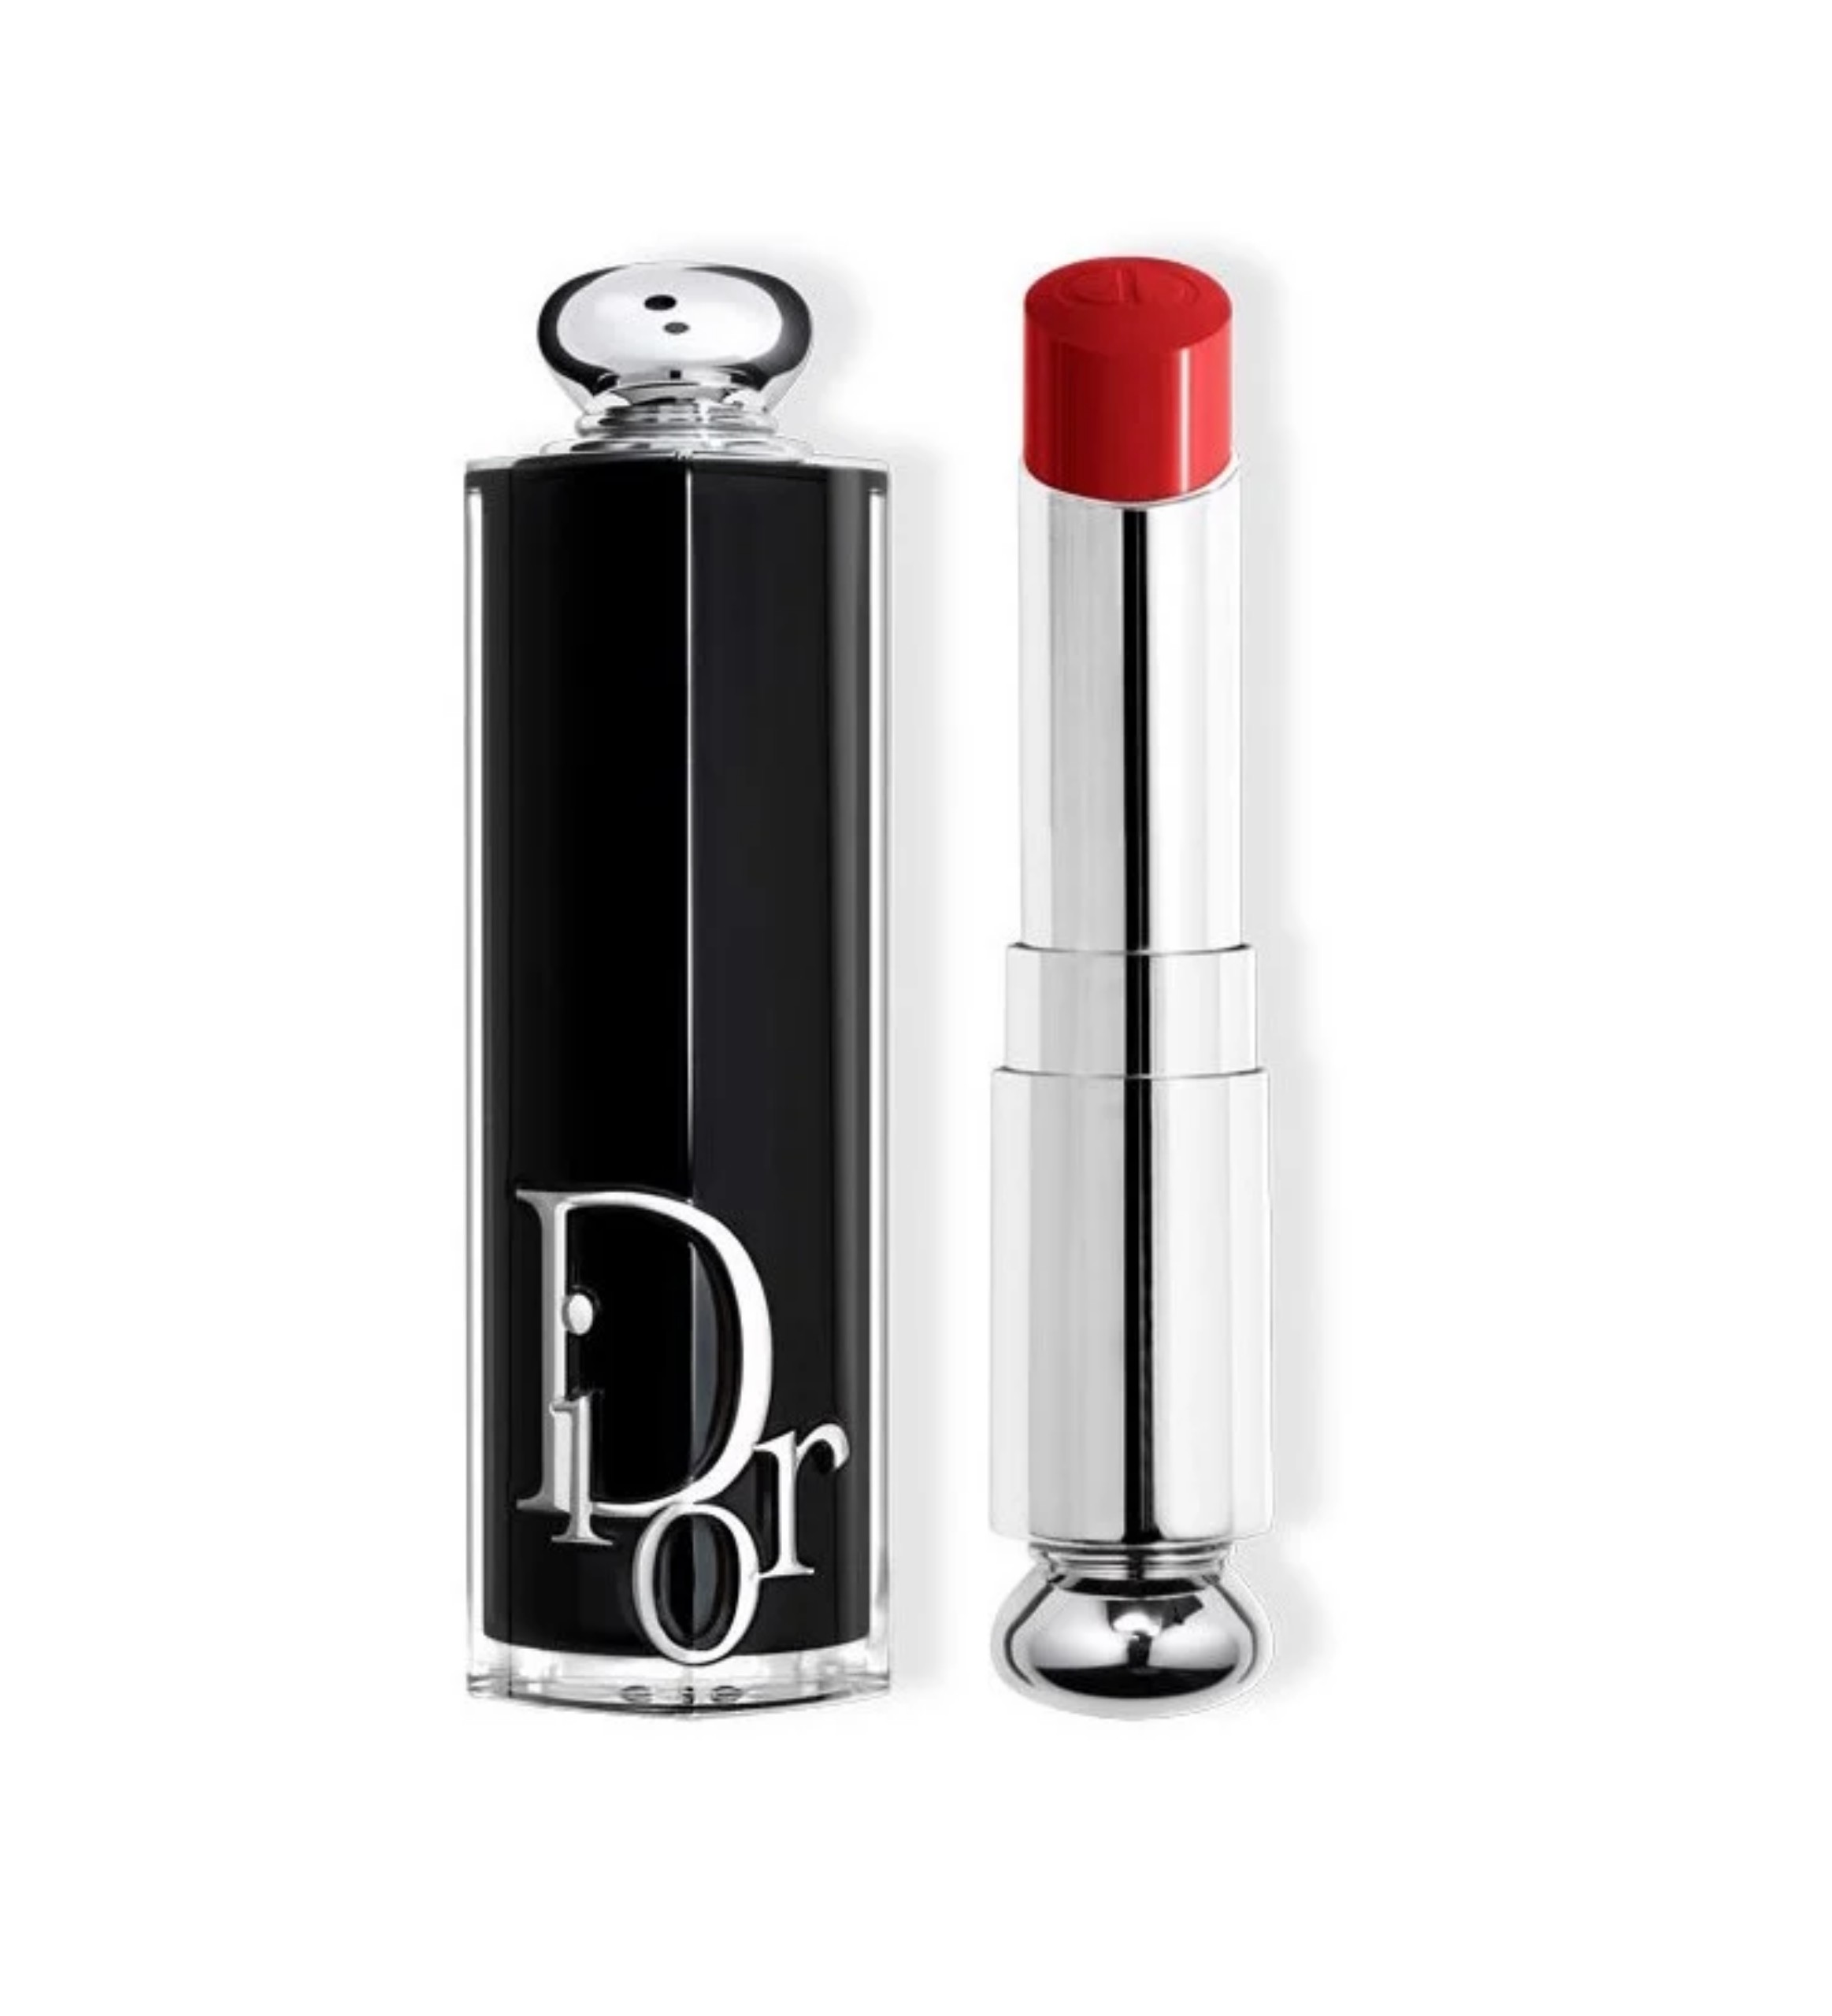 HCMSon Dior Addict Lipstick Lacquer Stick Màu 620 Poisonous  Lazadavn